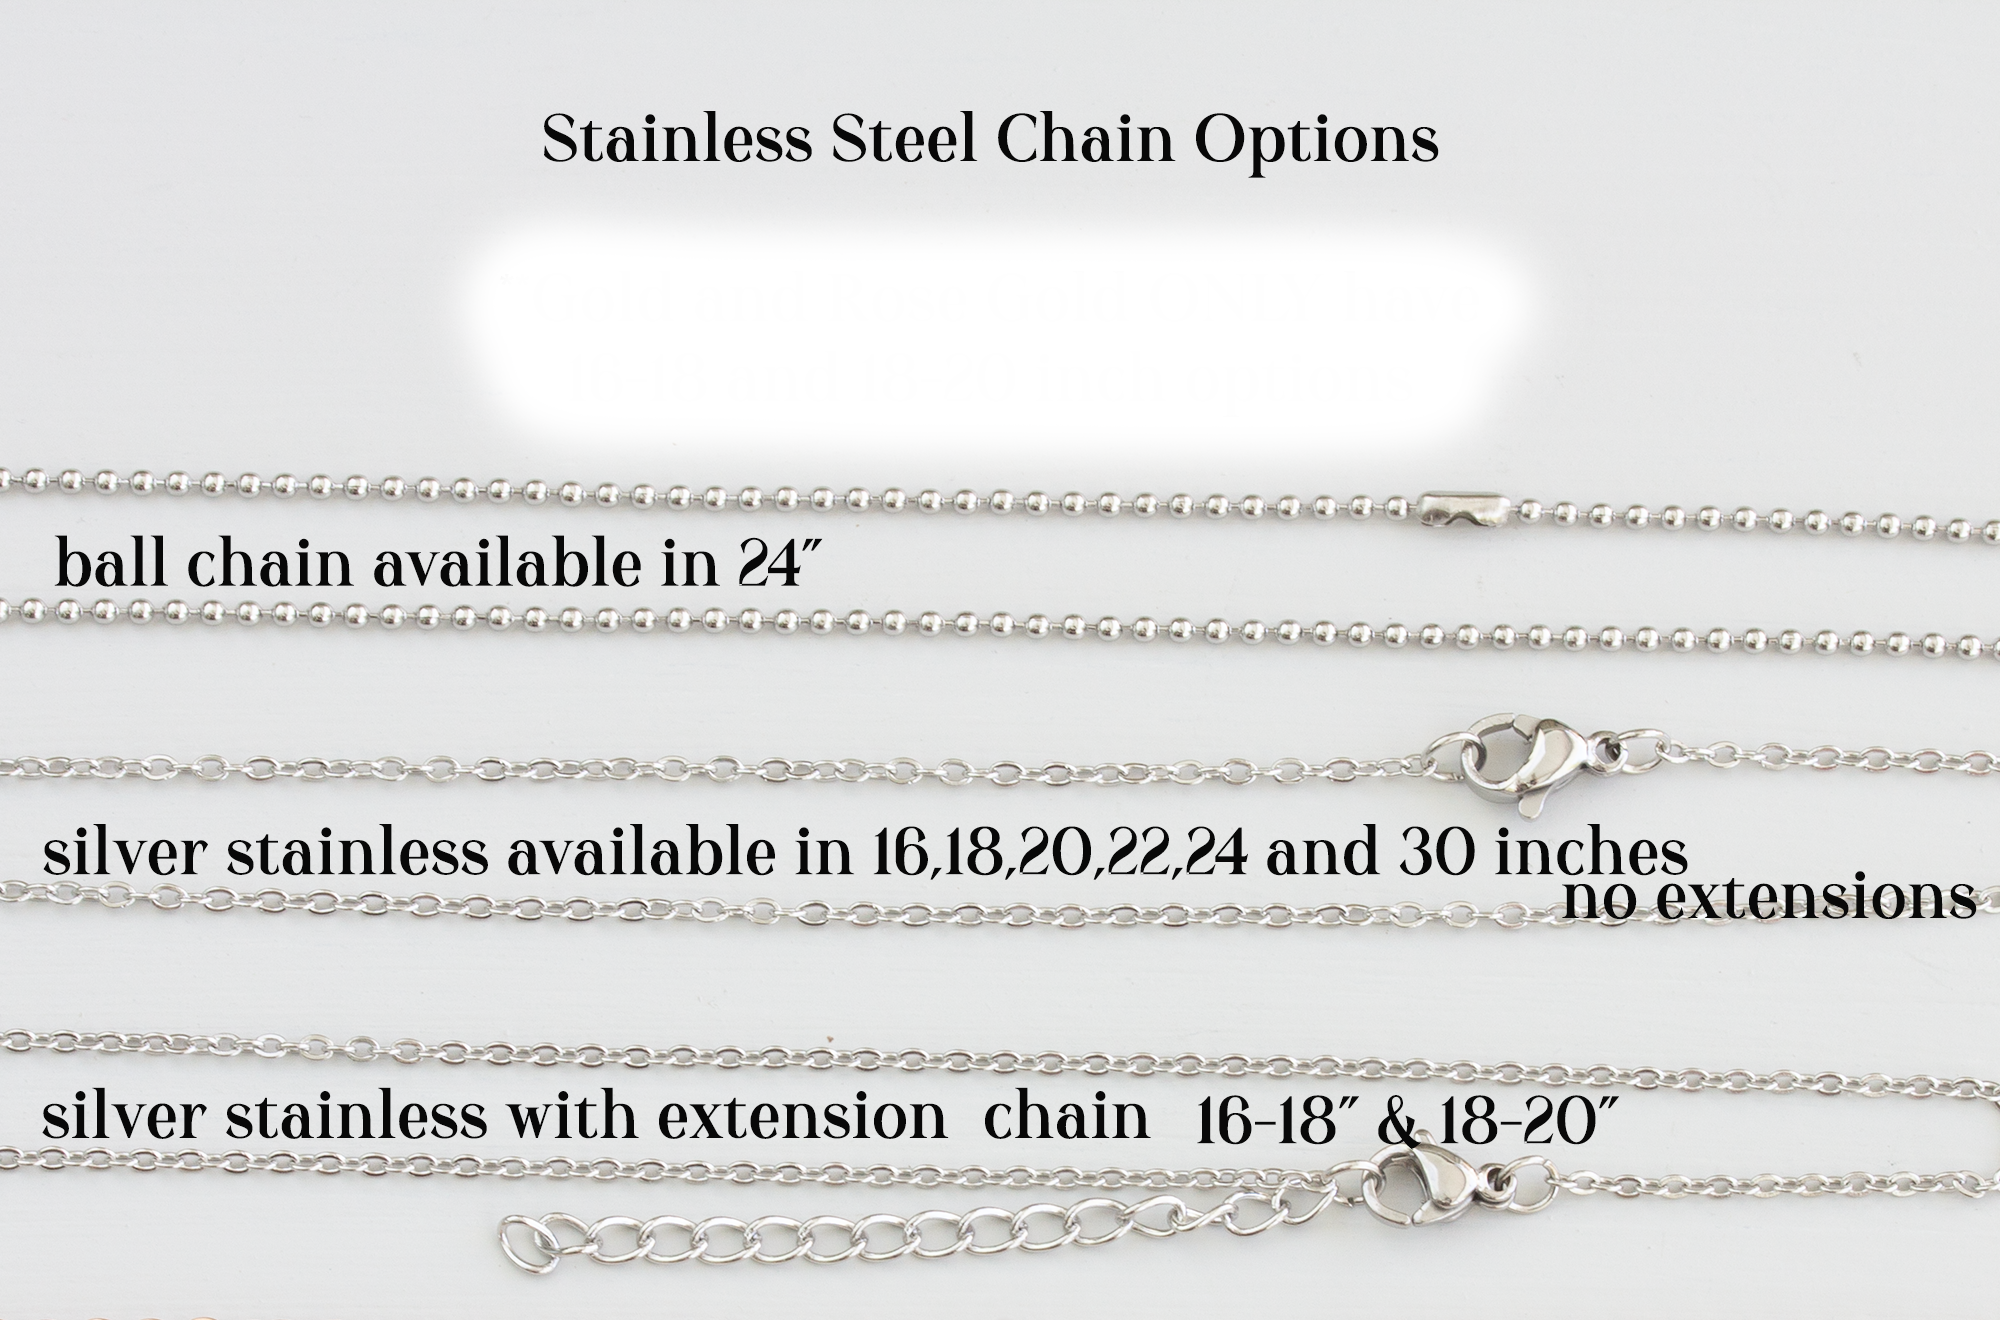 Custom Chain Bracelet | Silver | Custom Engraved Jewelry | Waterproof & Won't Fade | CustomCuff